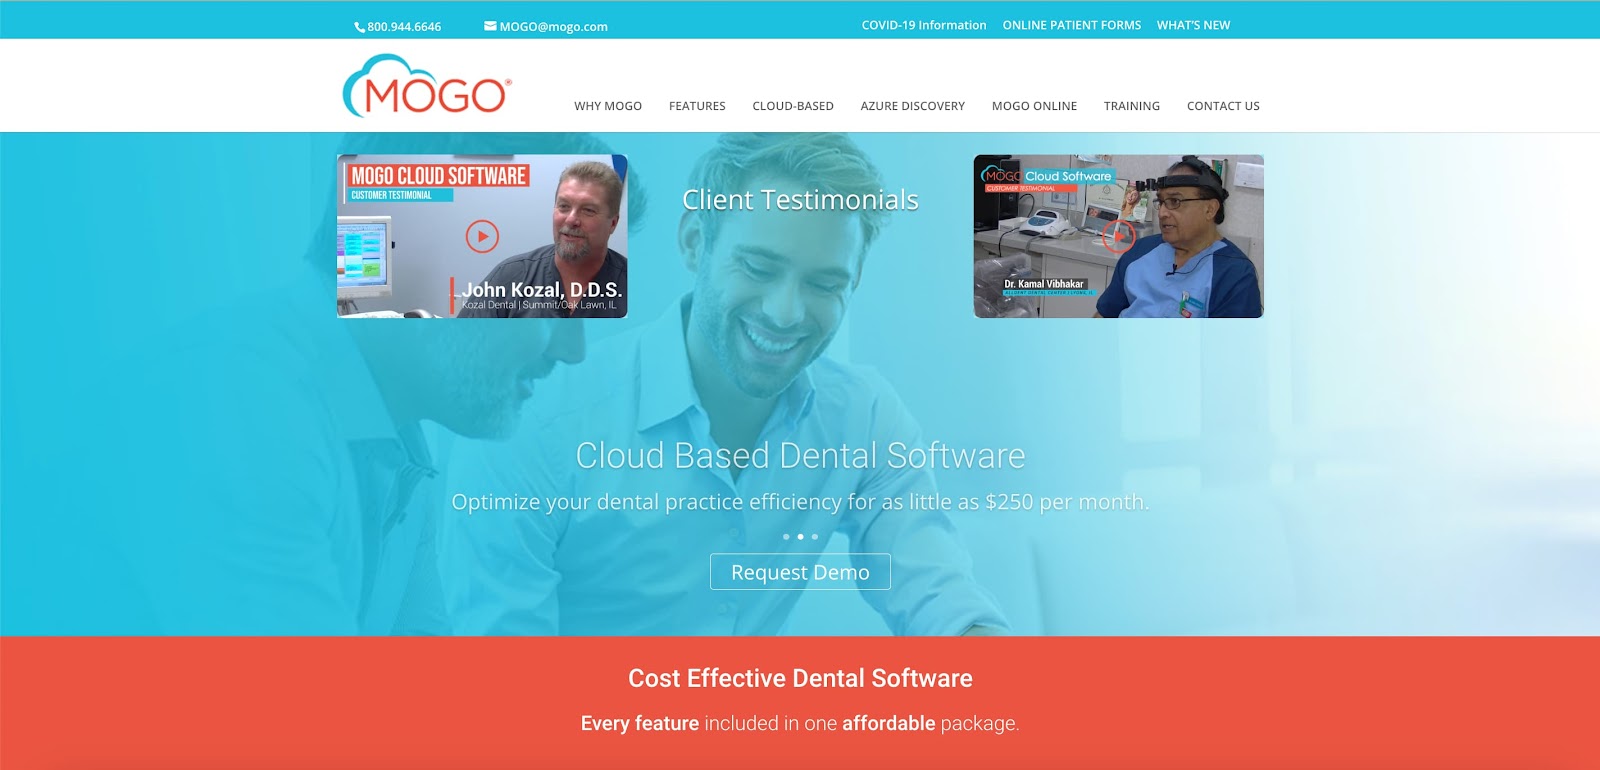 MOGO cloud-based dental practice management solution